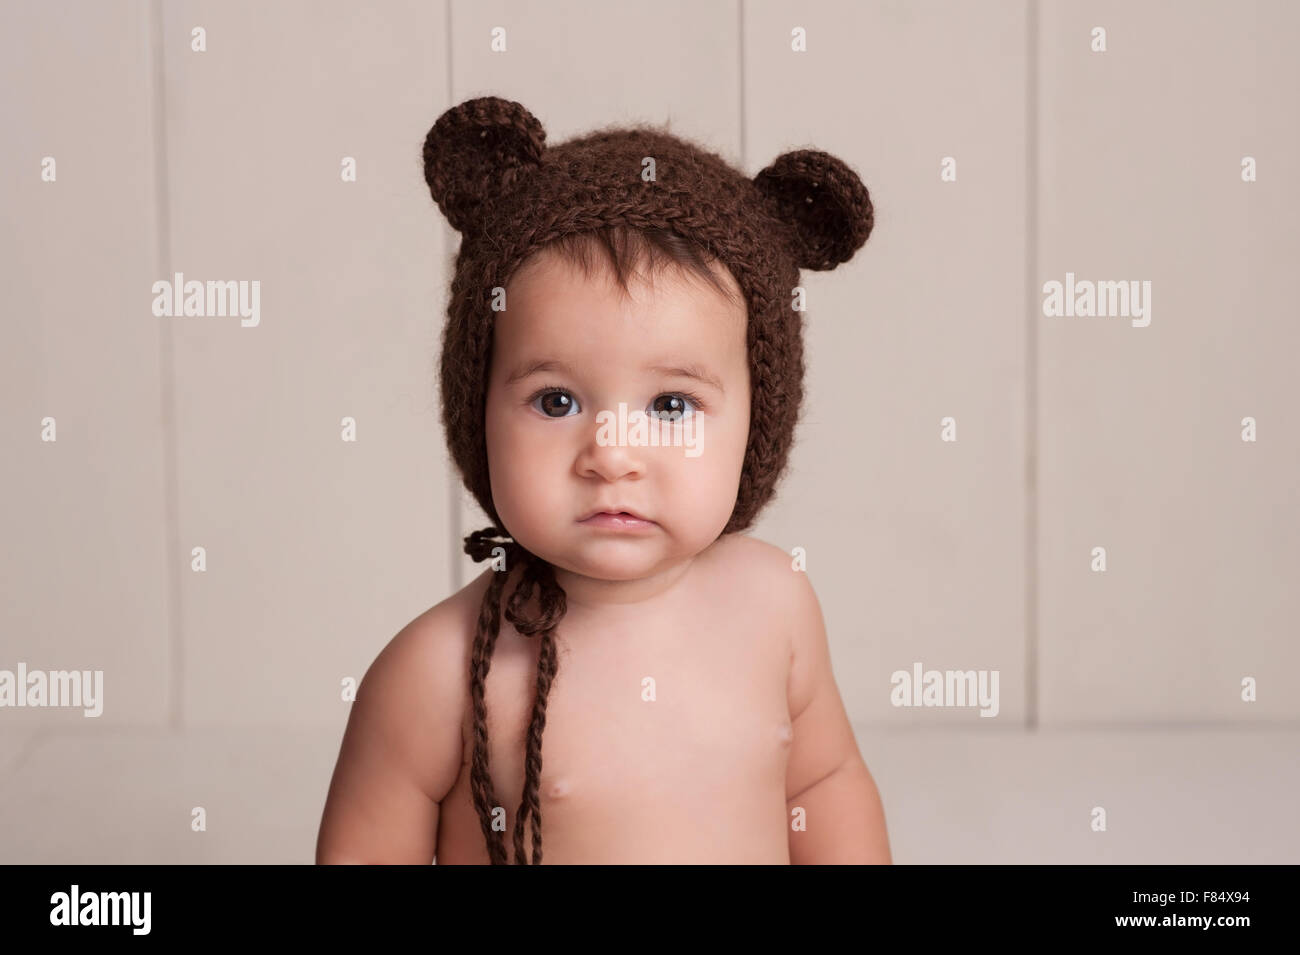 Kopfschuss von einem neun Monate alten Baby Mädchen trägt eine braune, gehäkelte, Bären-Motorhaube. Gedreht im Studio mit einem weißen, Holz getäfelten ba Stockfoto